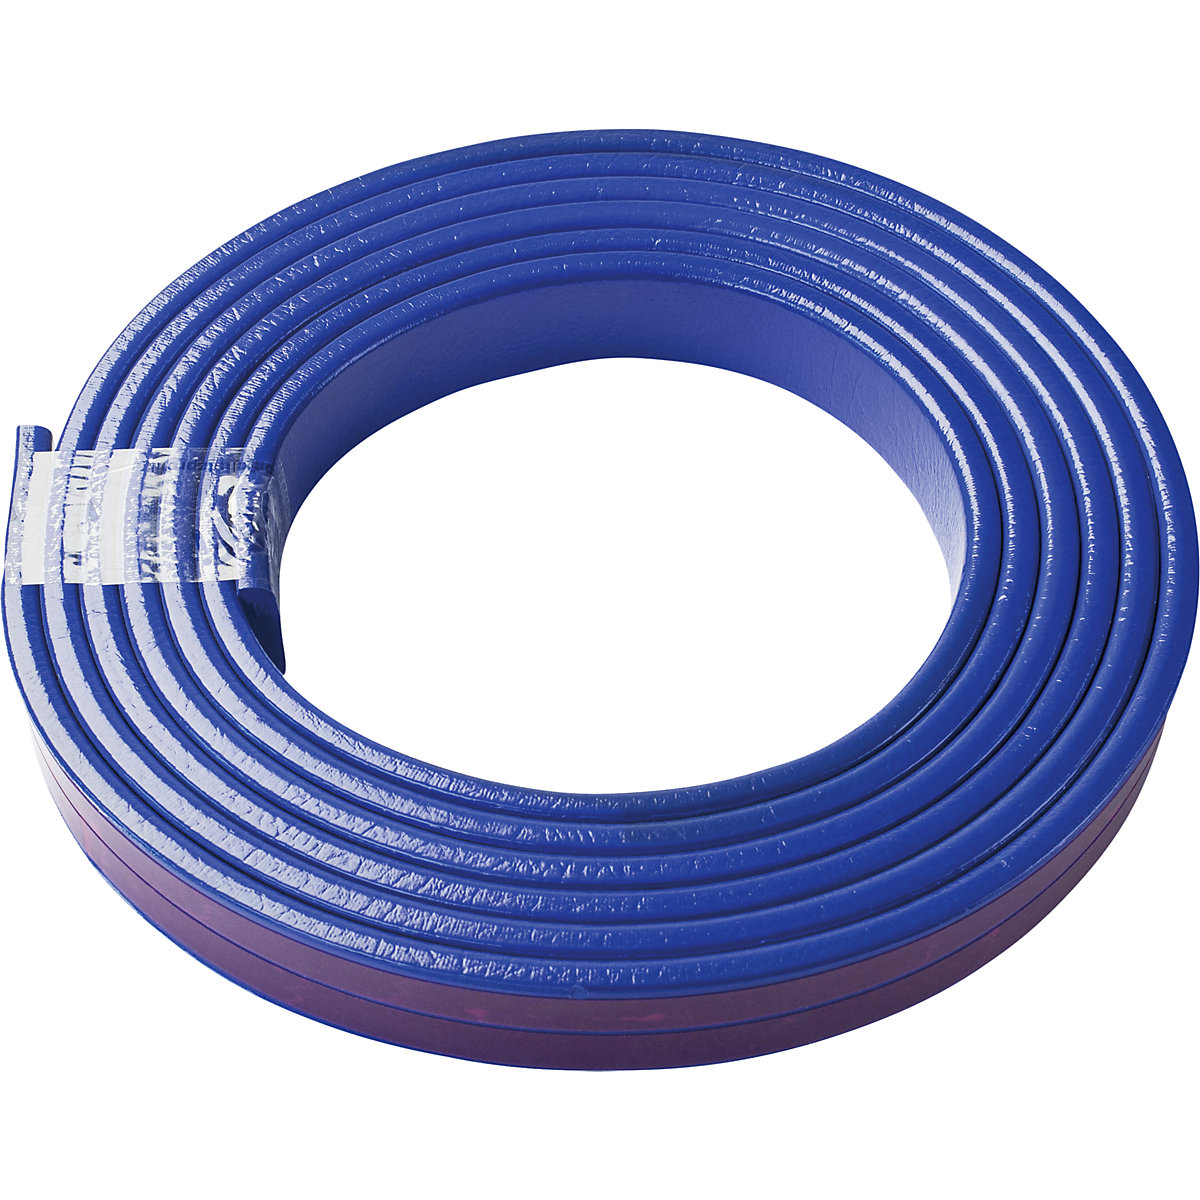 Protection des surfaces Knuffi® – SHG, type F, 1 rouleau de 5 m, bleu